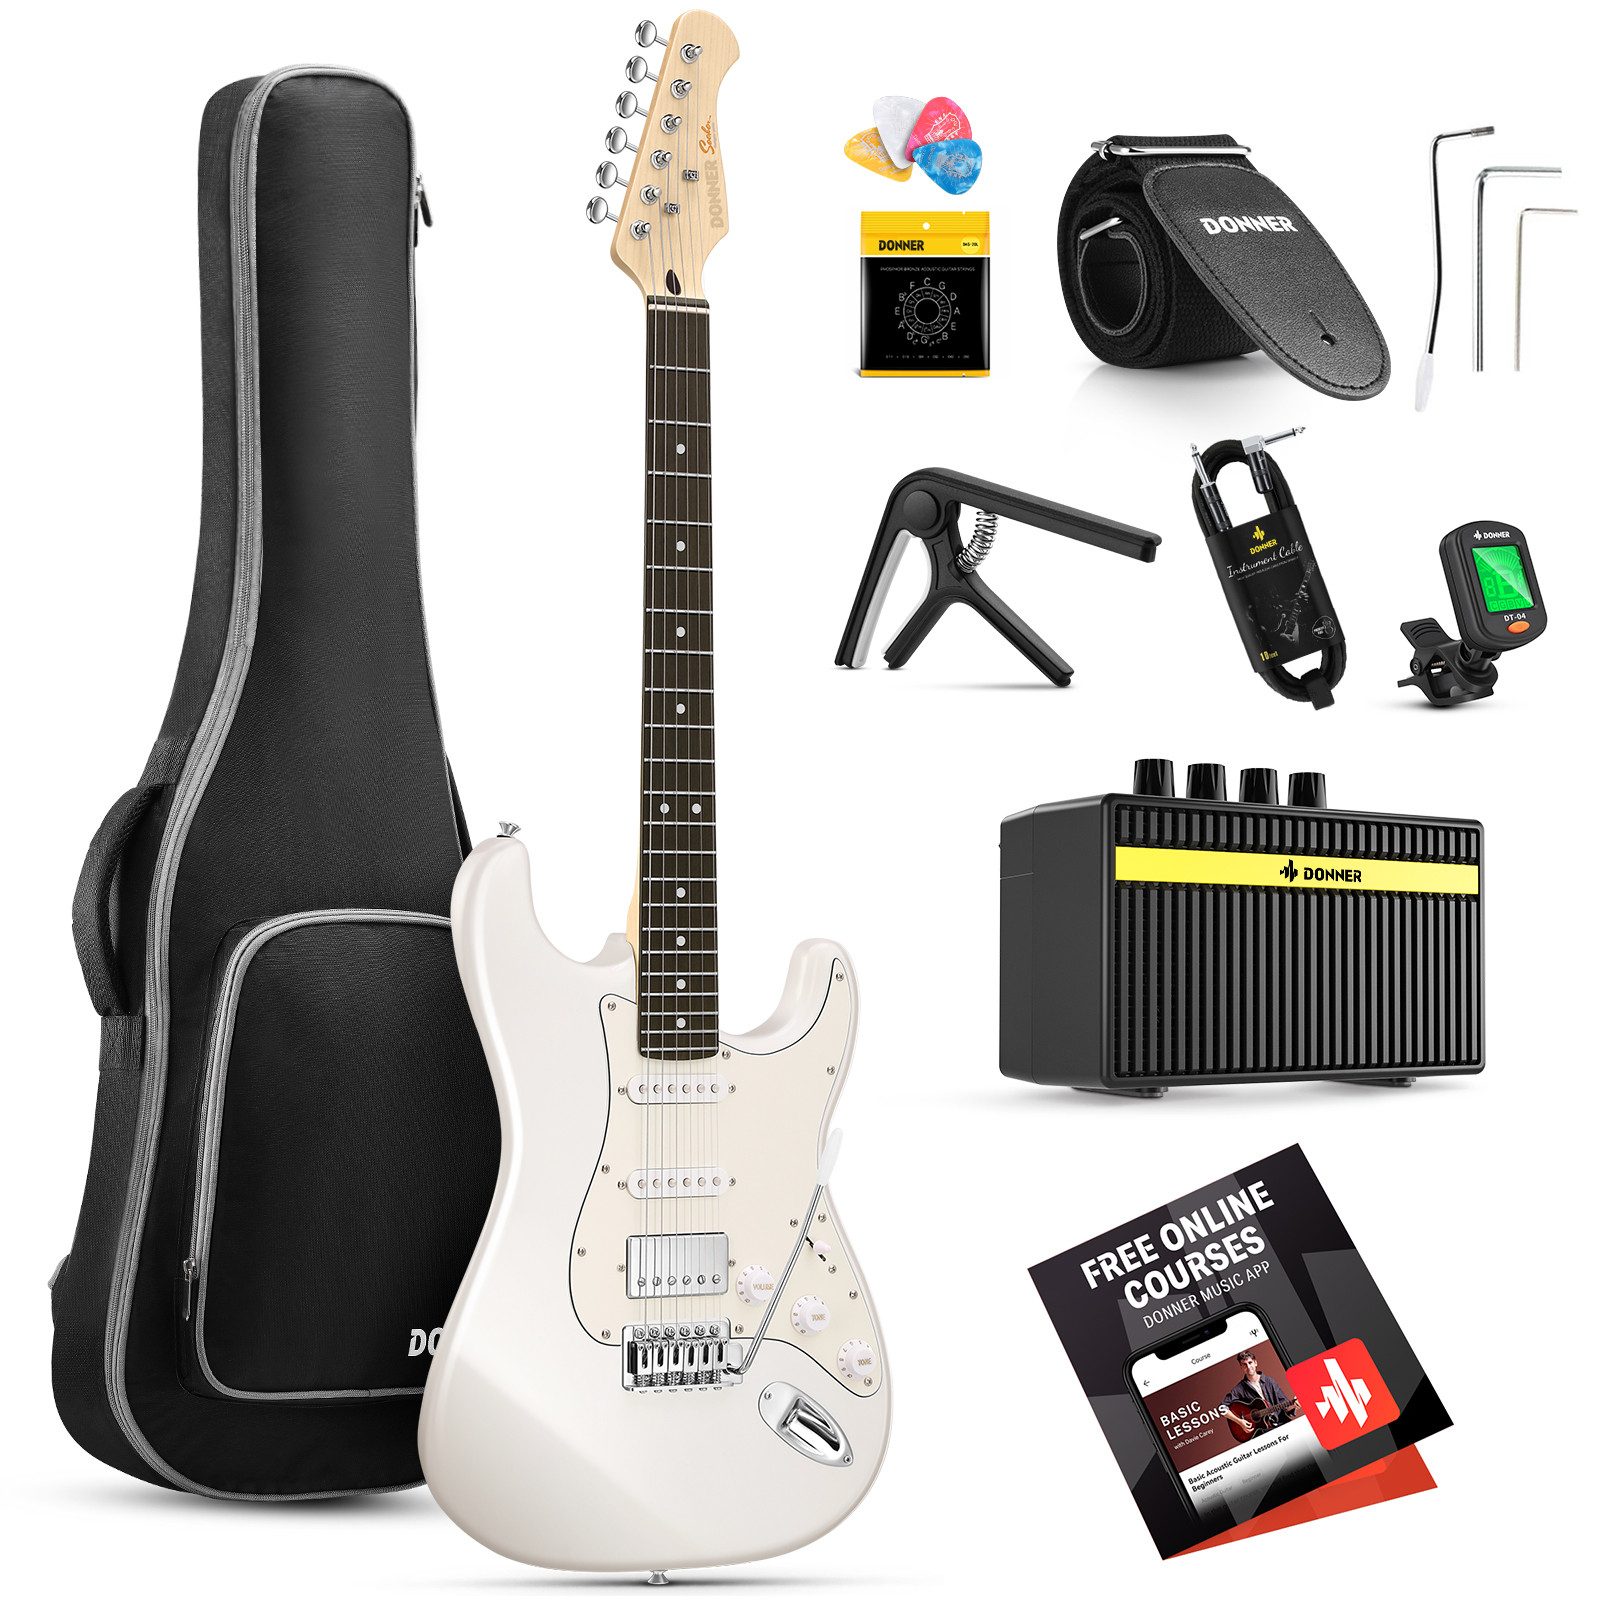 Donner E-Gitarre E-Gitarre 39 Zoll mit Kits für erwachsene Anfänger DST-152, Festkörper, Satz, Verstärker, Tasche, Zubehör, ST-Stil, HSS-Tonabnehmerspule geteilt